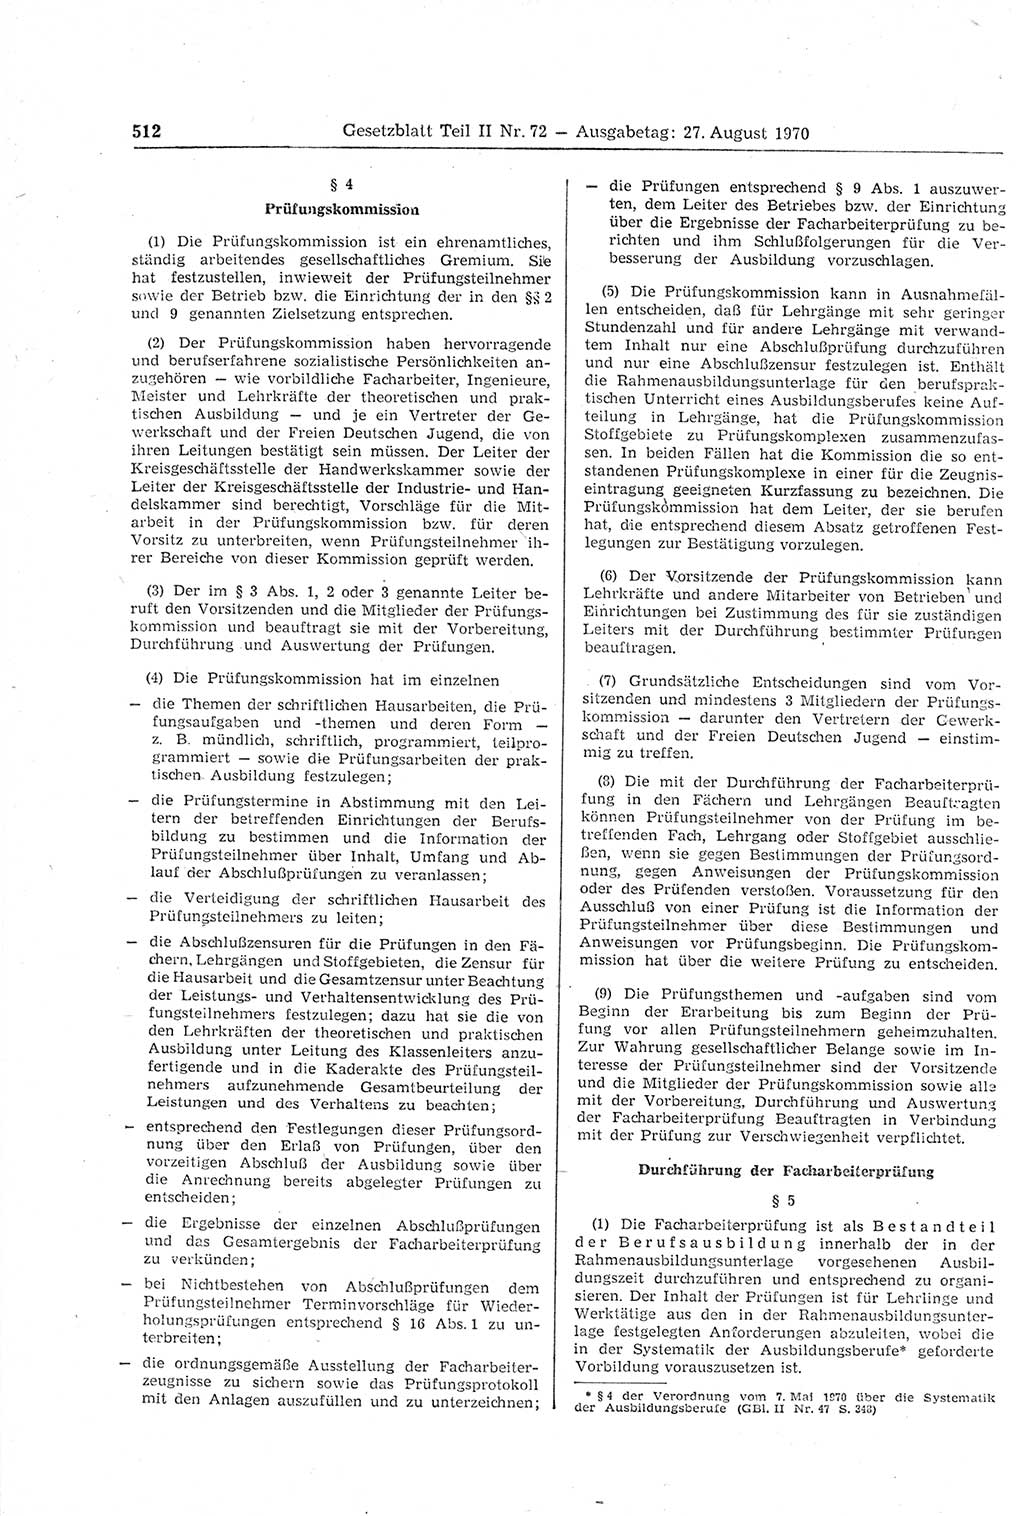 Gesetzblatt (GBl.) der Deutschen Demokratischen Republik (DDR) Teil ⅠⅠ 1970, Seite 512 (GBl. DDR ⅠⅠ 1970, S. 512)